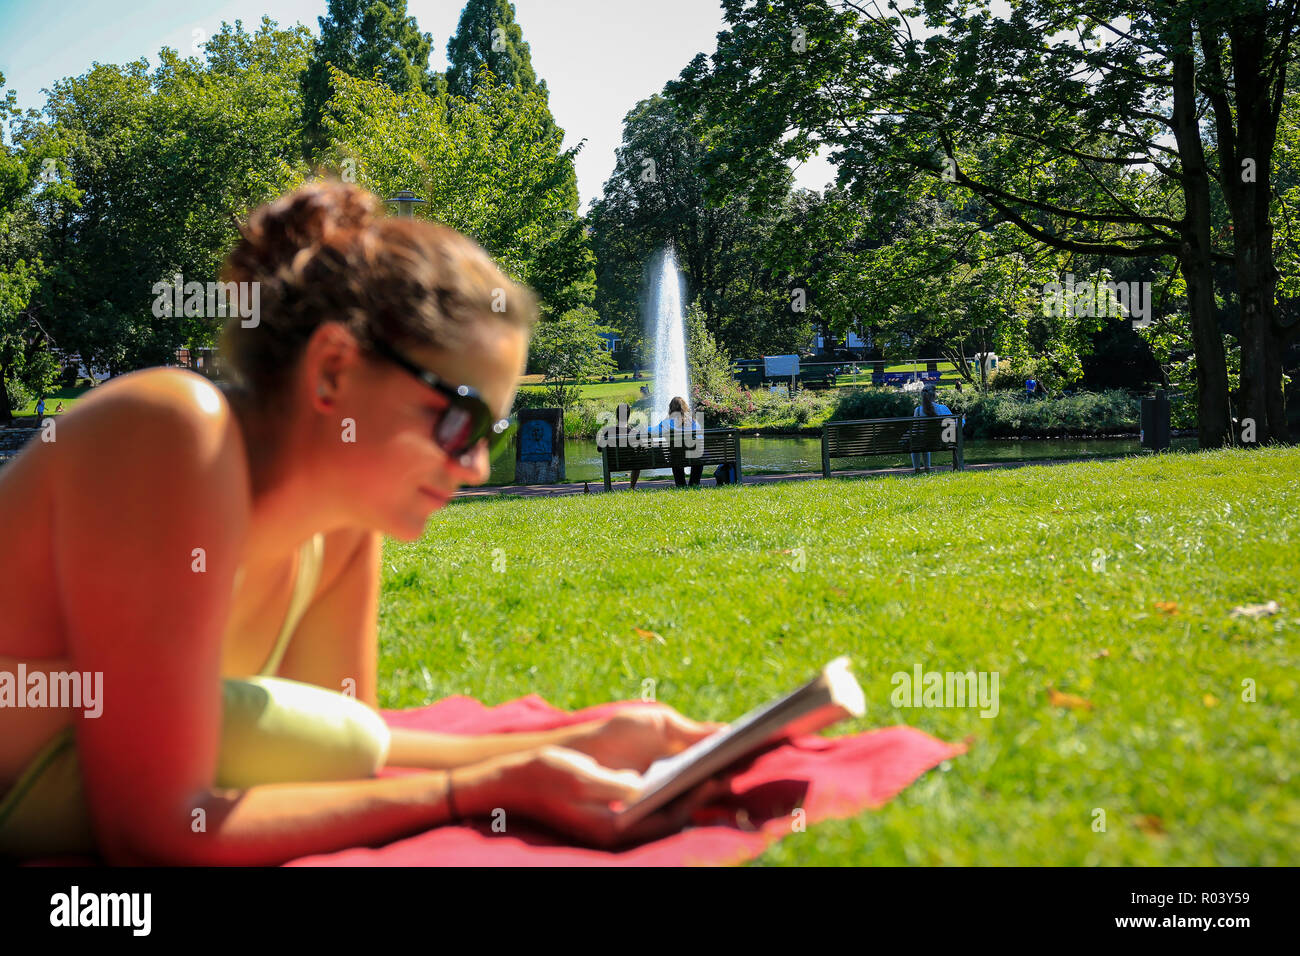 Essen, Alemania, área de Ruhr, ciudad jardín, joven yace en la pradera y lee en un libro Foto de stock